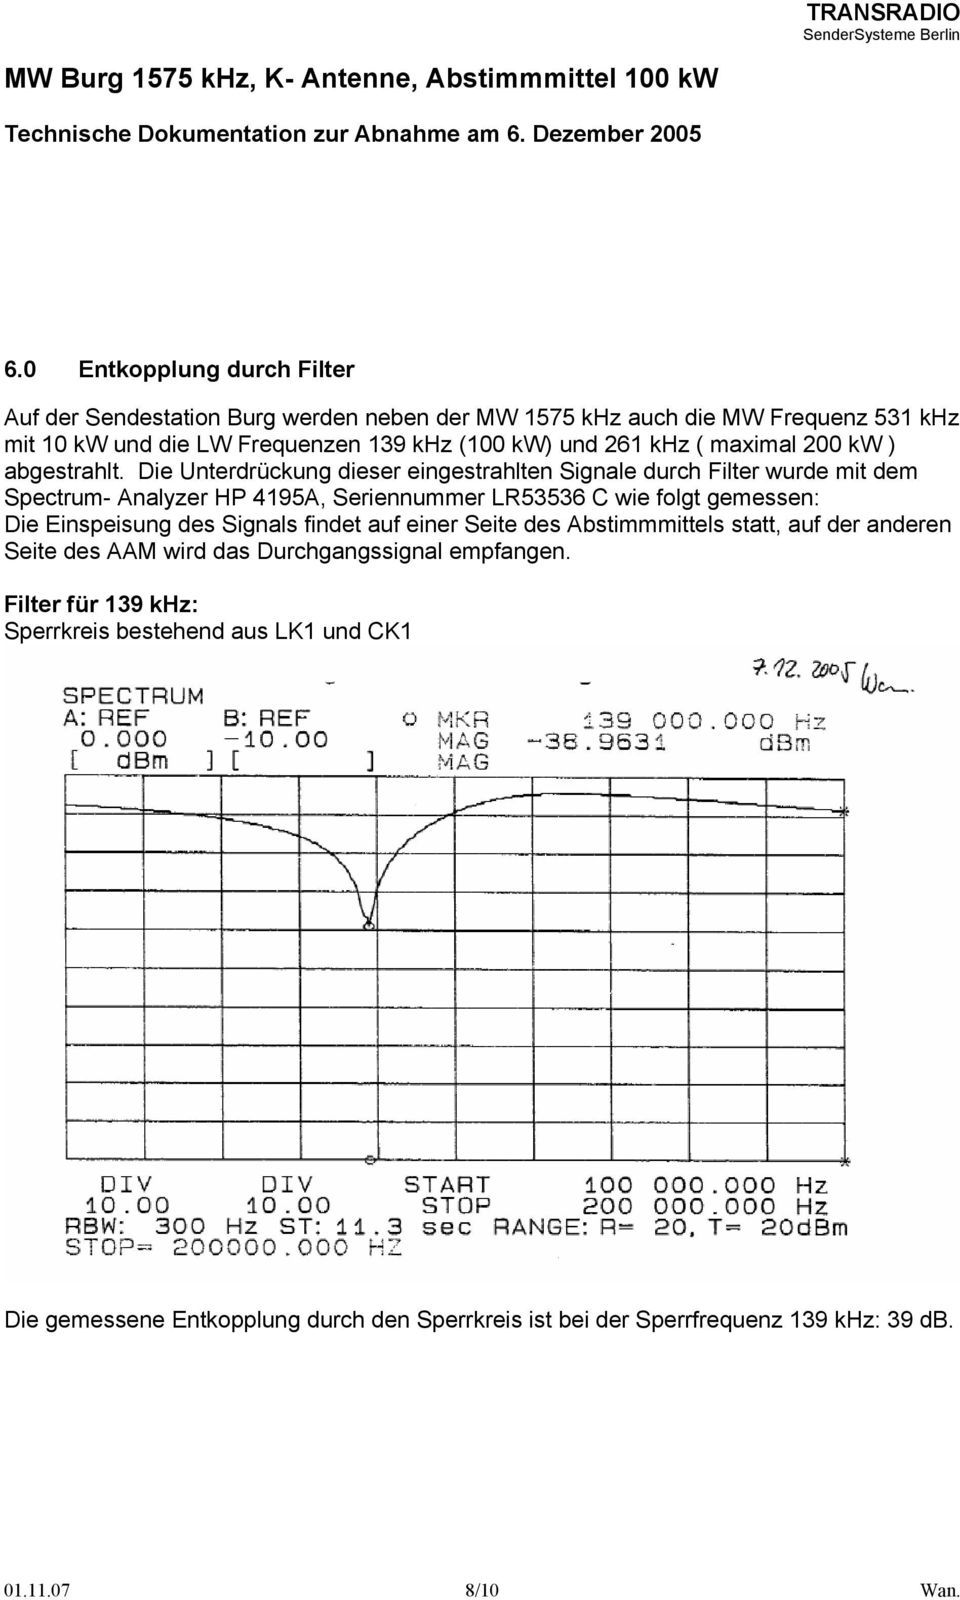 Die Unterdrückung dieser eingestrahlten Signale durch Filter wurde mit dem Spectrum- Analyzer HP 4195A, Seriennummer LR53536 C wie folgt gemessen: Die Einspeisung